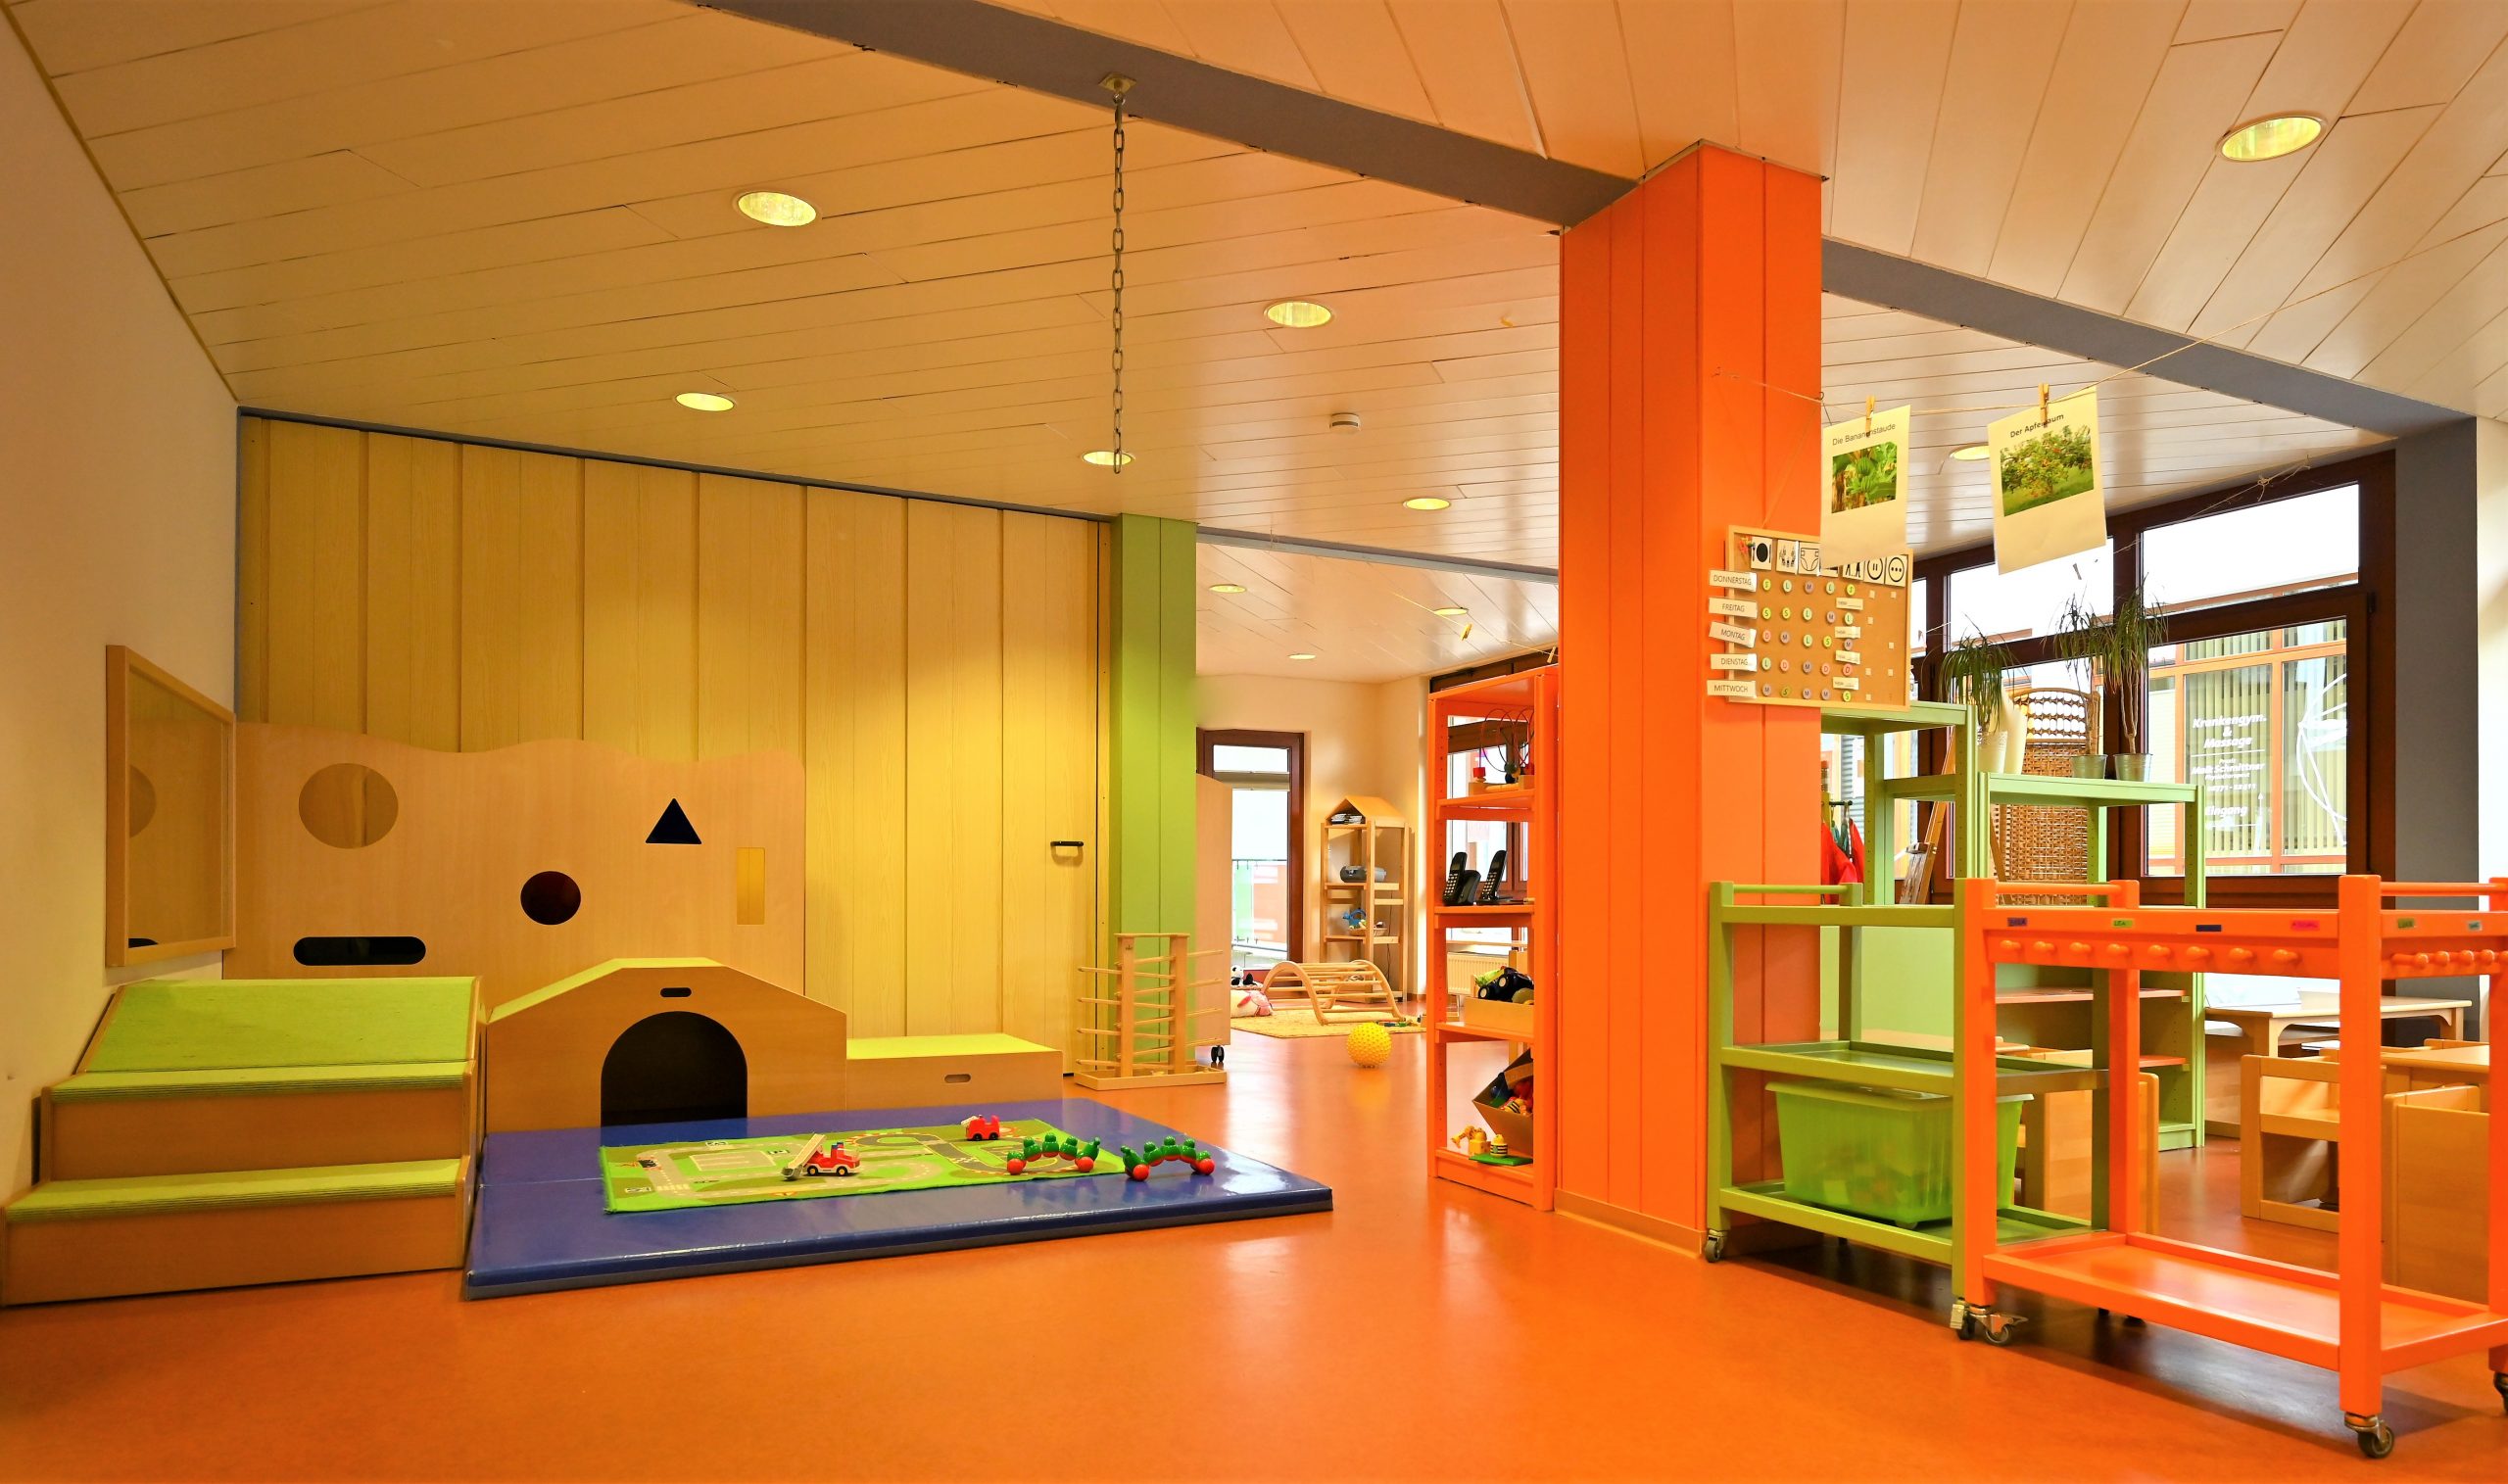 Der Krippenraum ist ein großer heller Raum mit einer hellen Holzdecke und orangefarbenem Boden. Die Möbel und Aufbewahrungen sind in grün und orange gehalten. Vor einem Spielgerät zum Klettern und Krabbeln, welches mit grünem Teppich bezogen ist, findet sich eine blaue Turnmatte.